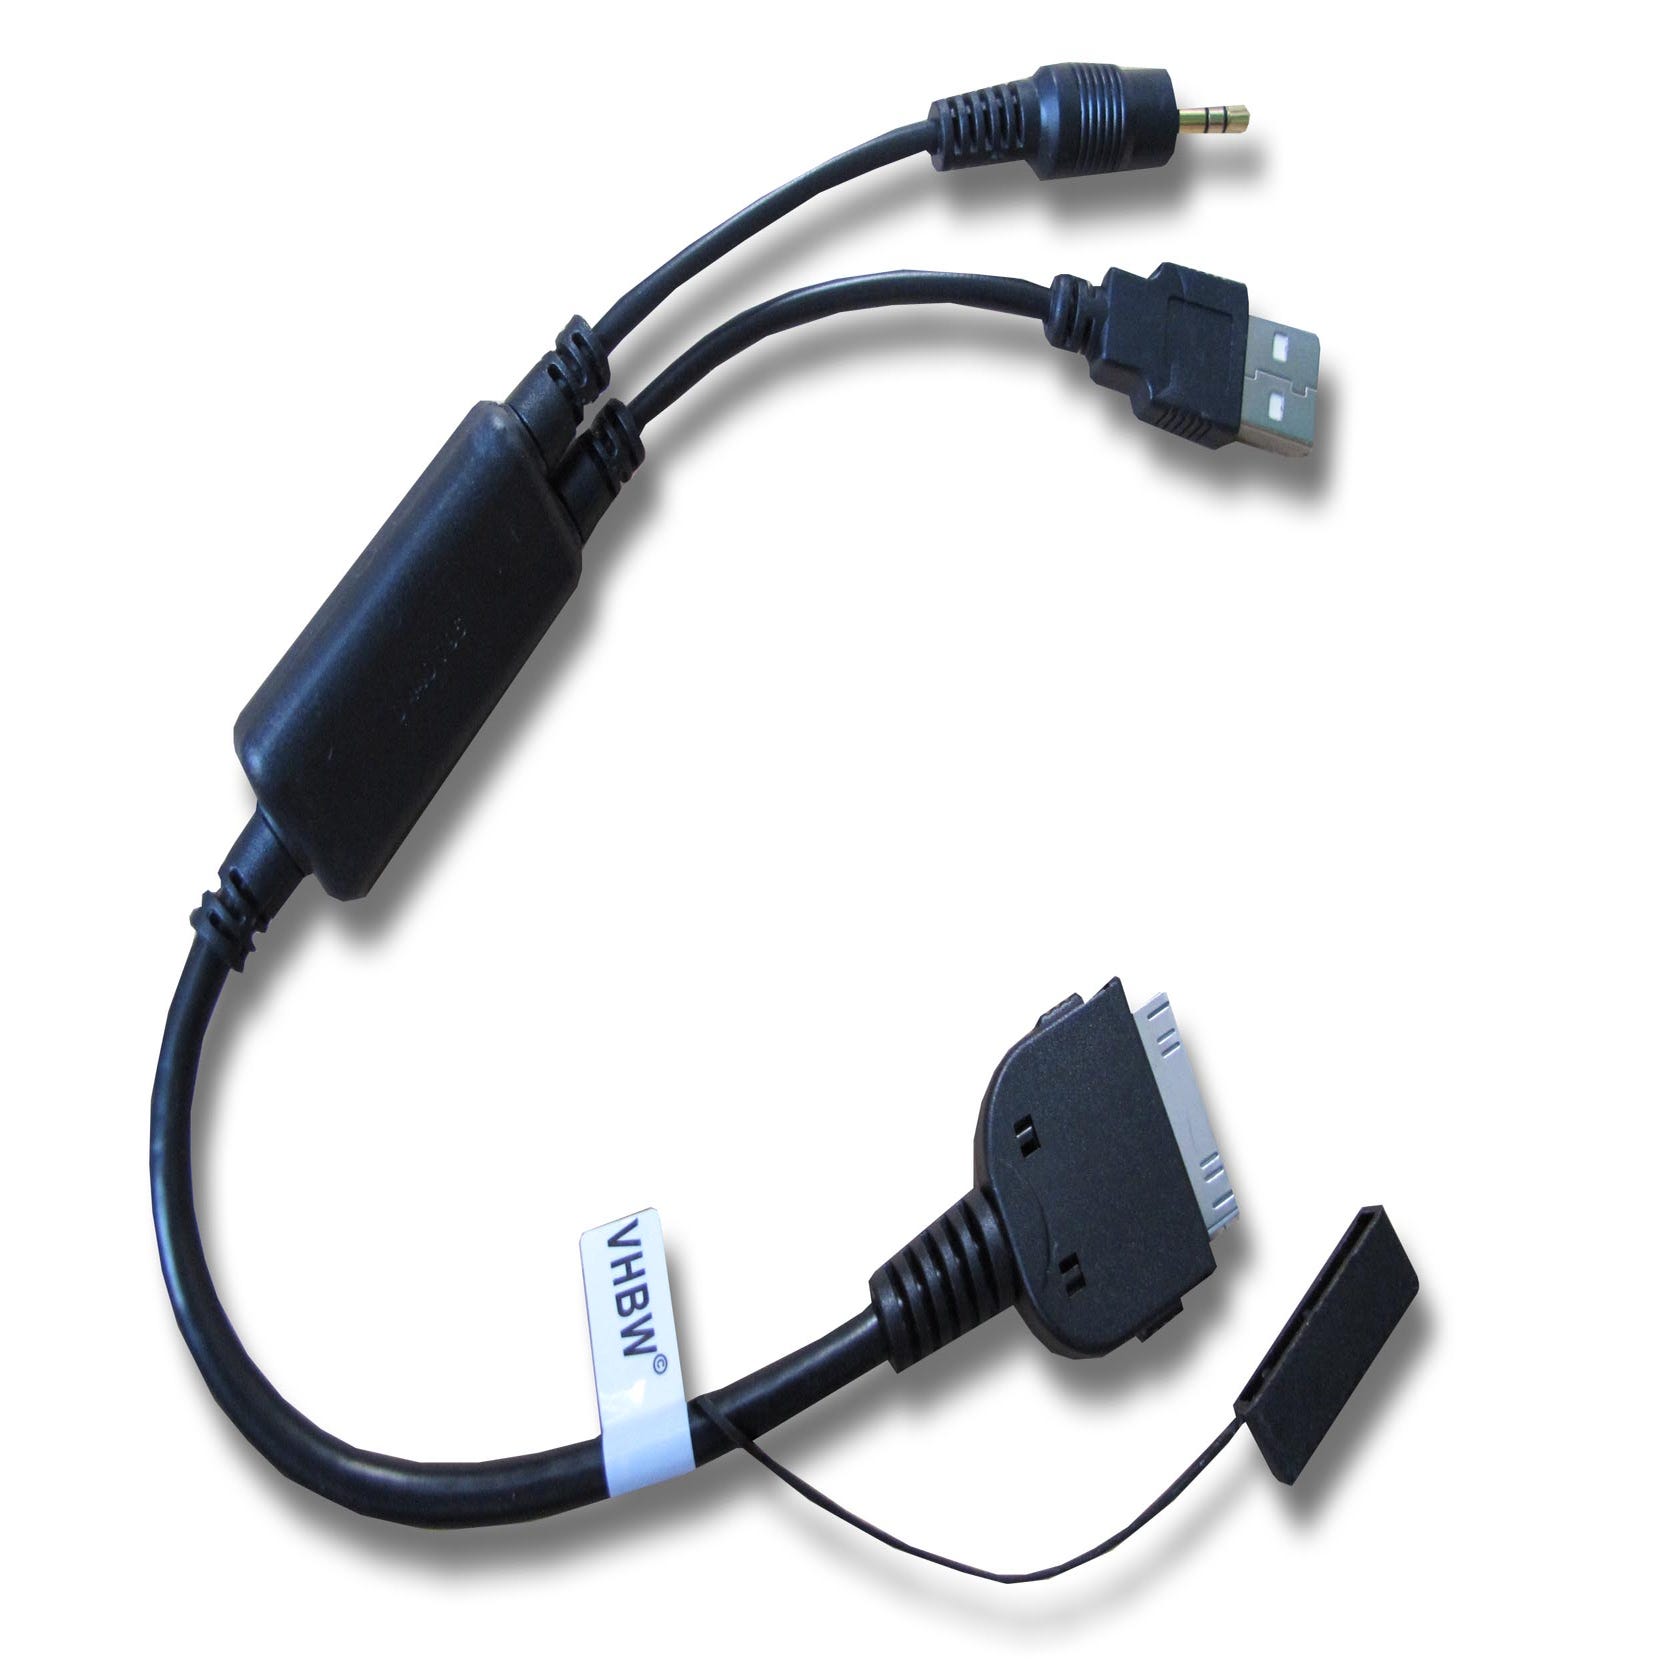 Vhbw Câble audio voiture compatible avec Apple iPhone 3G, 3GS, 4G